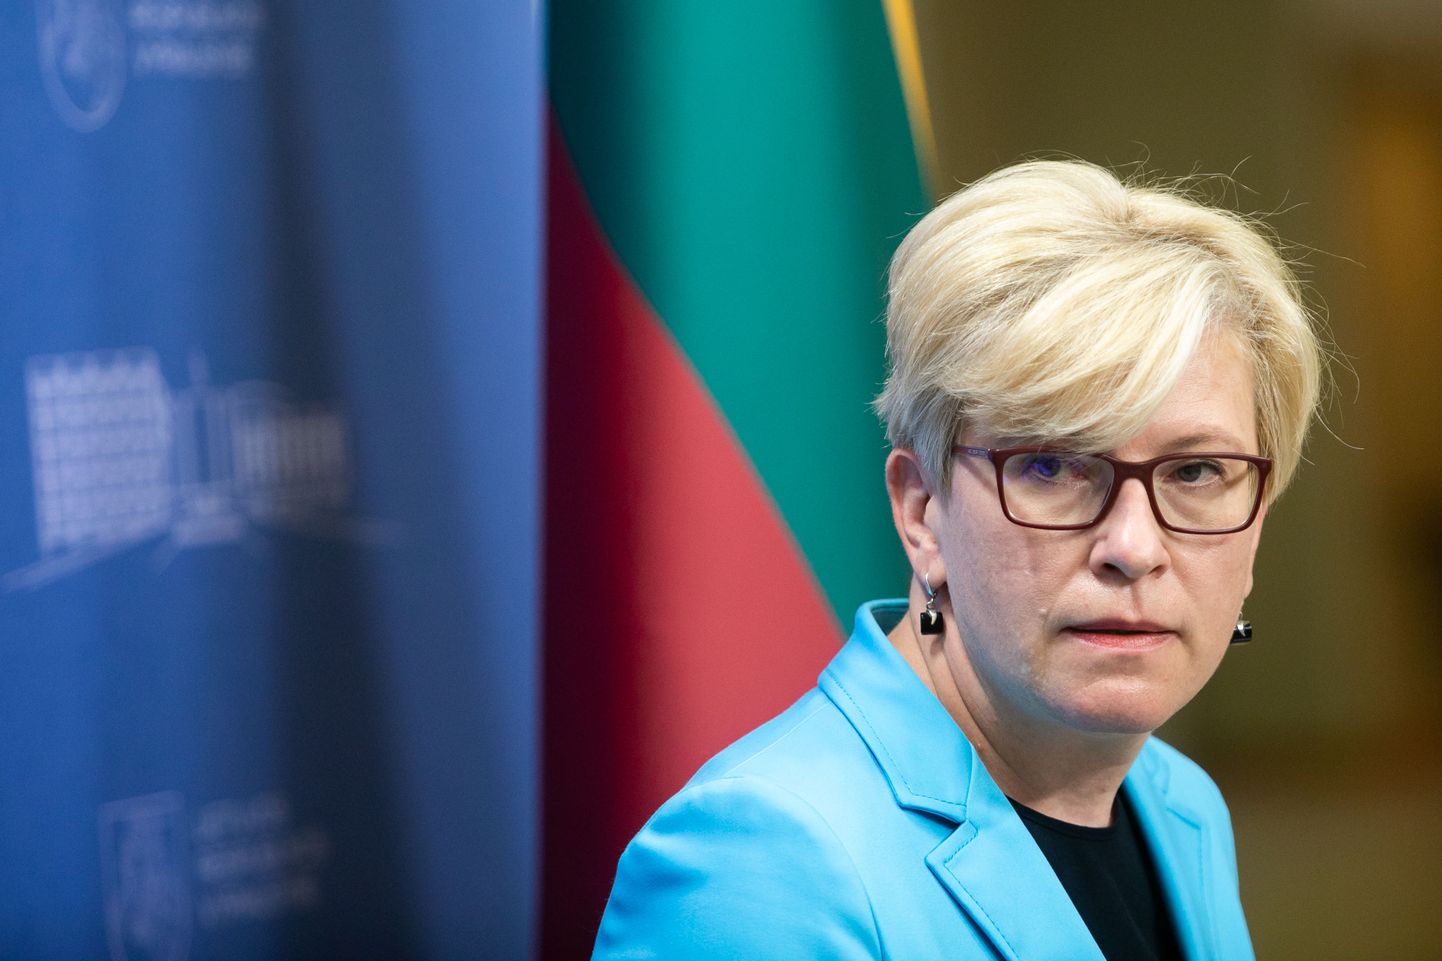 Leedu peaminister Ingrida Šimonytė